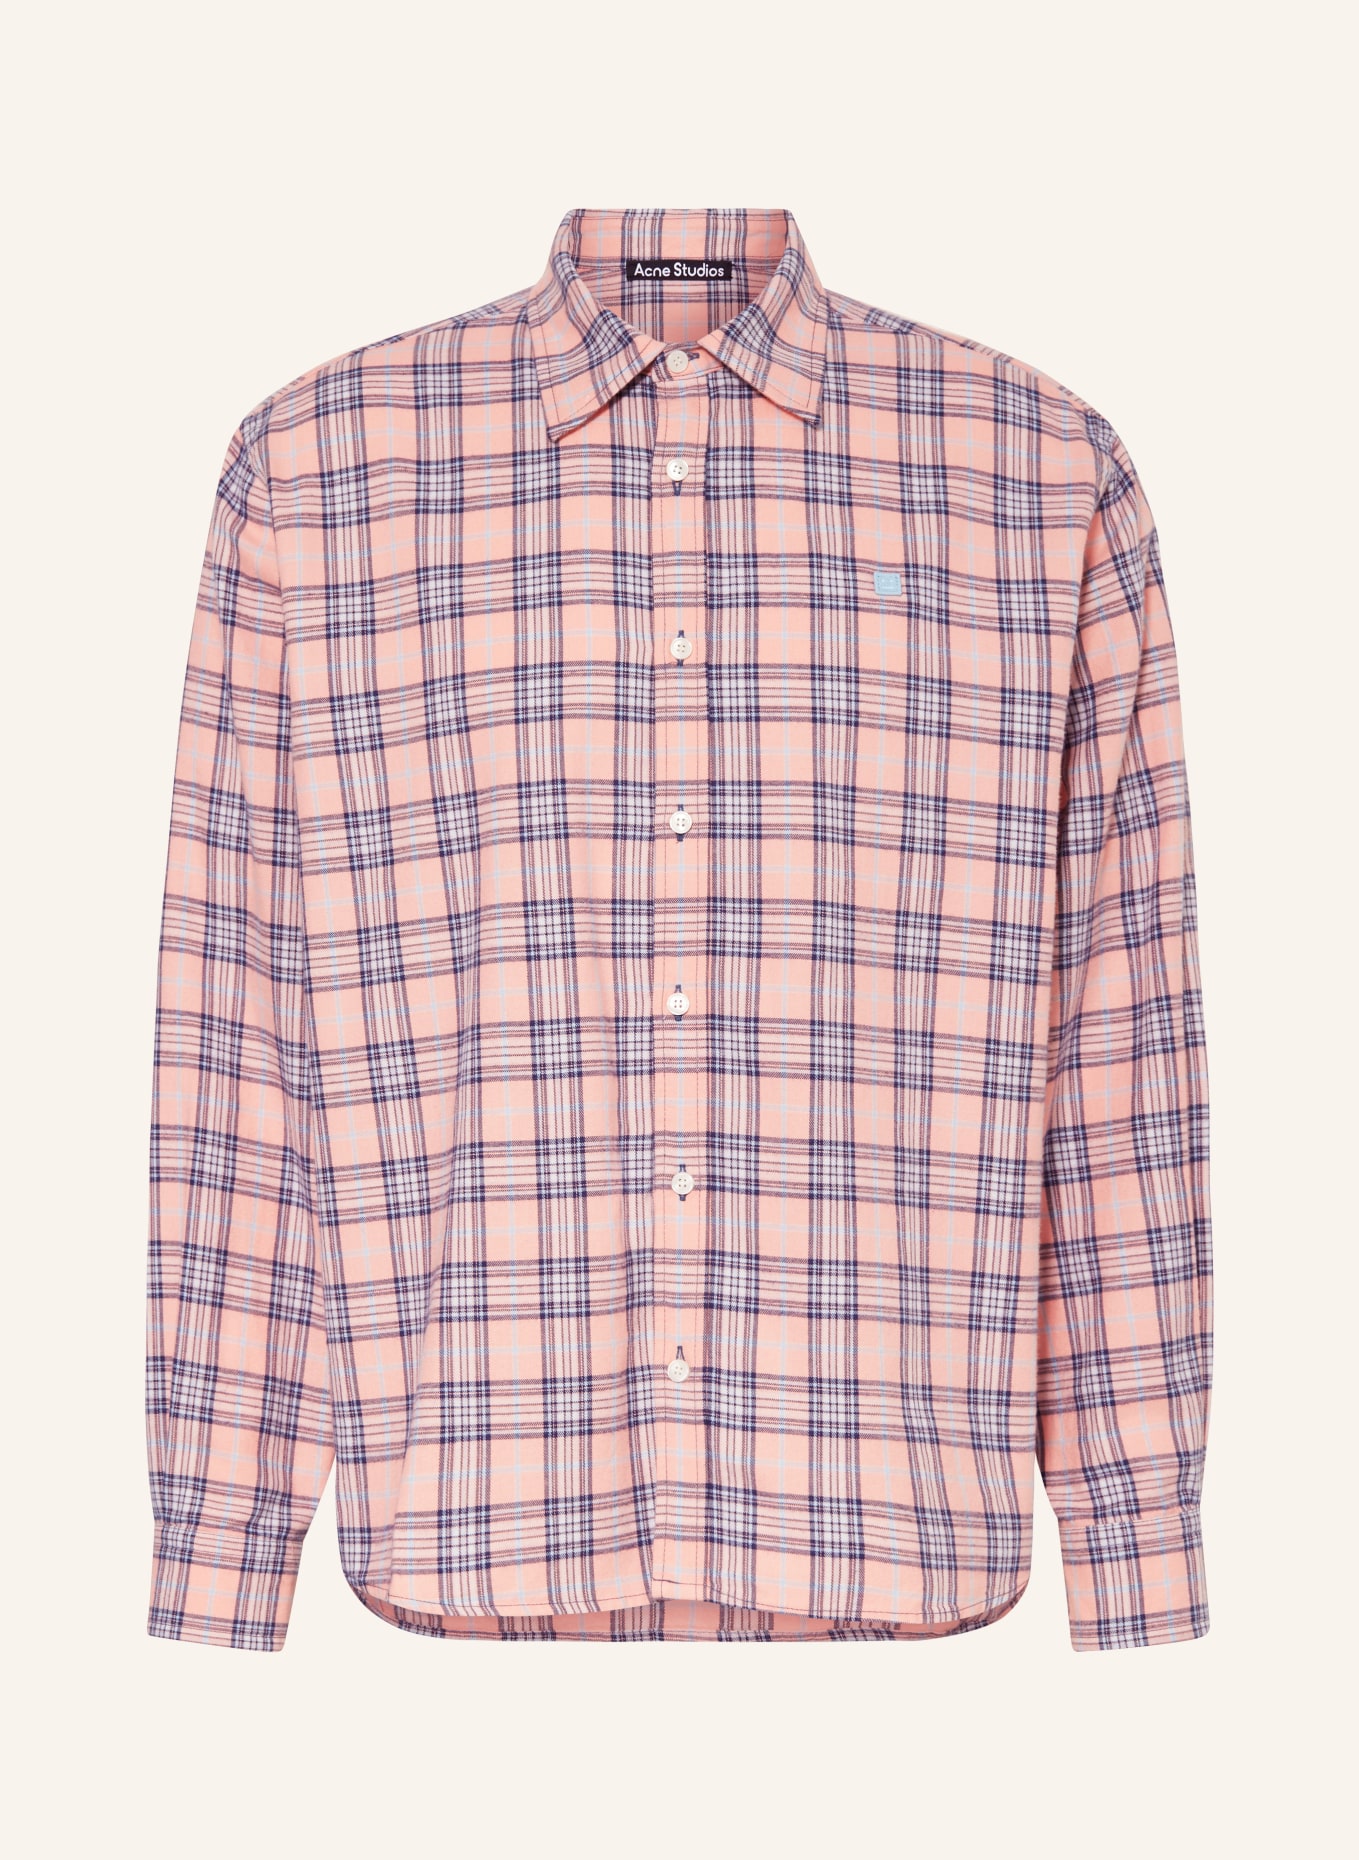 Acne Studios Flannel shirt comfort fit, Color: PINK/ DARK BLUE/ LIGHT BLUE (Image 1)